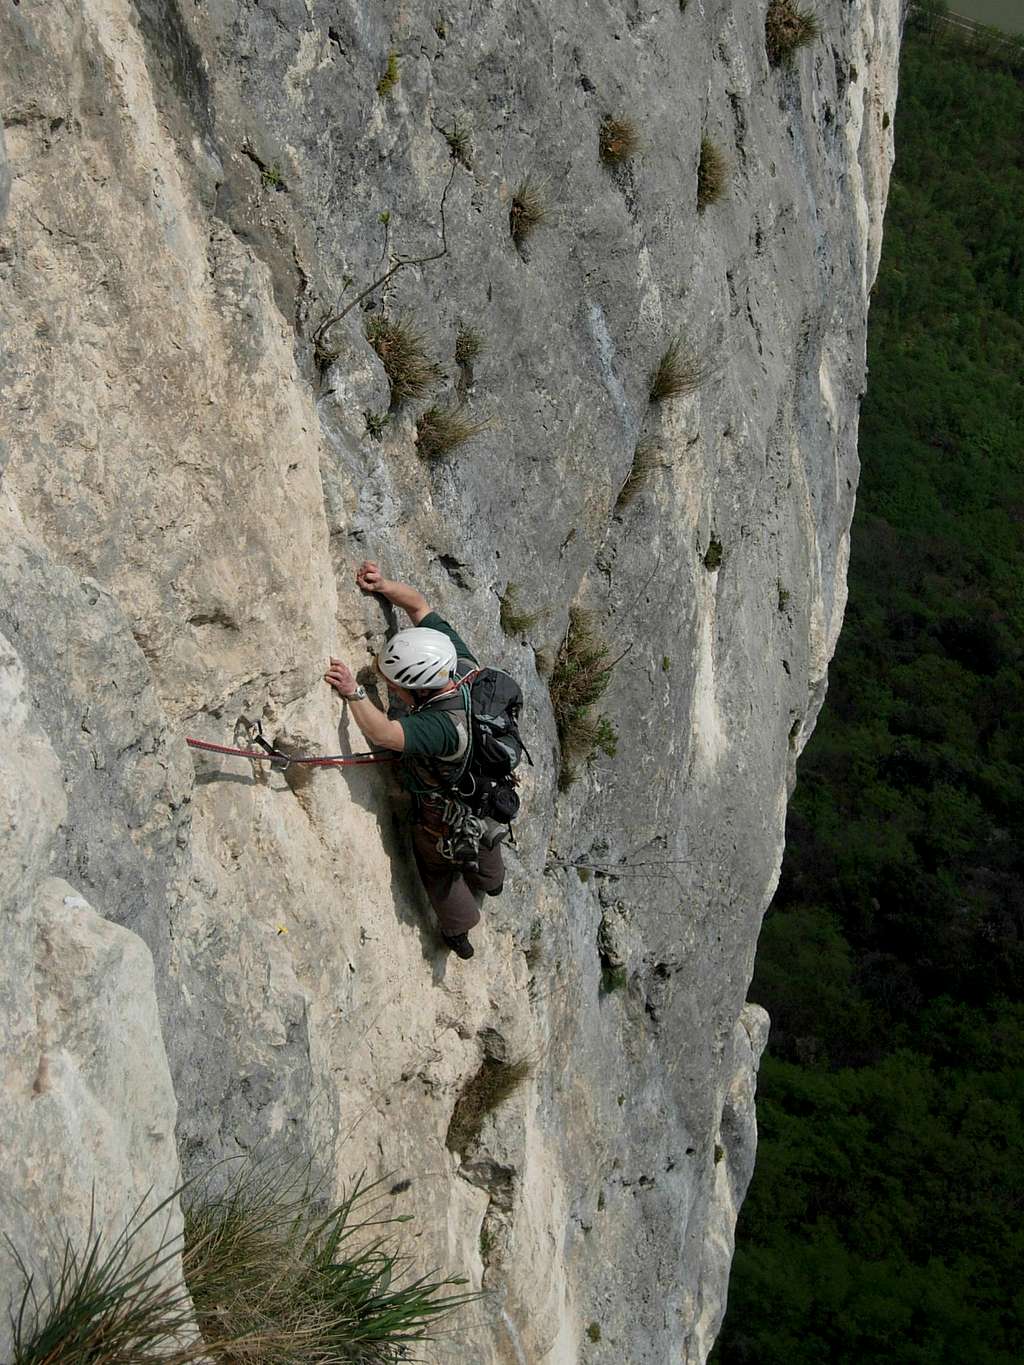 Monte Cimo, climbing Capitani Coraggiosi (Brave Captains)